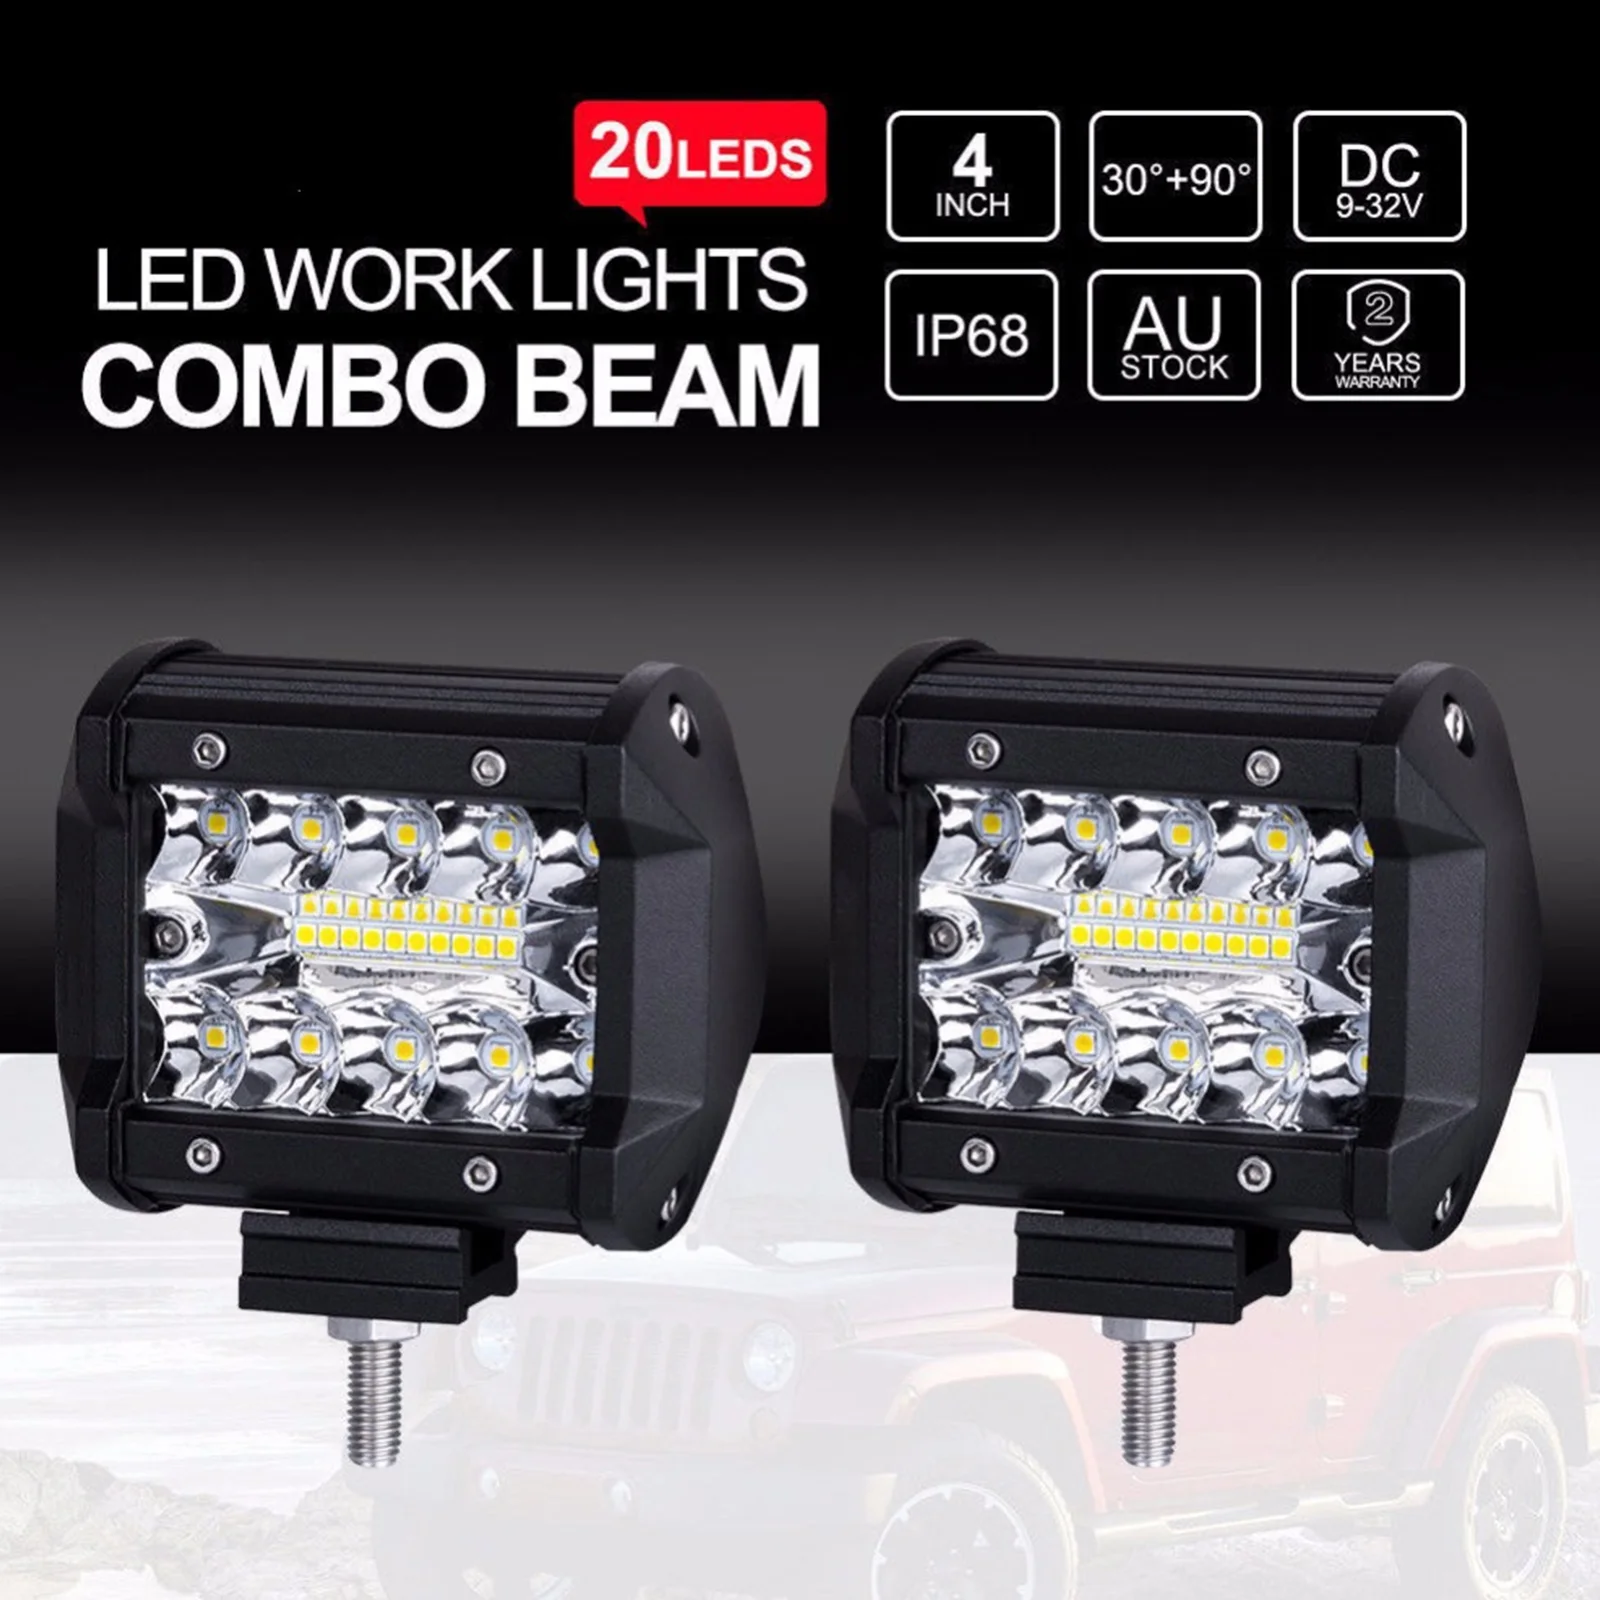 

2pcs Car LED Bar Worklight 60W Offroad Work Light 12V Spot Lighting Lamp 4x4 LED Tractor Headlight Bulbs Spotlight Truck ATV UTV